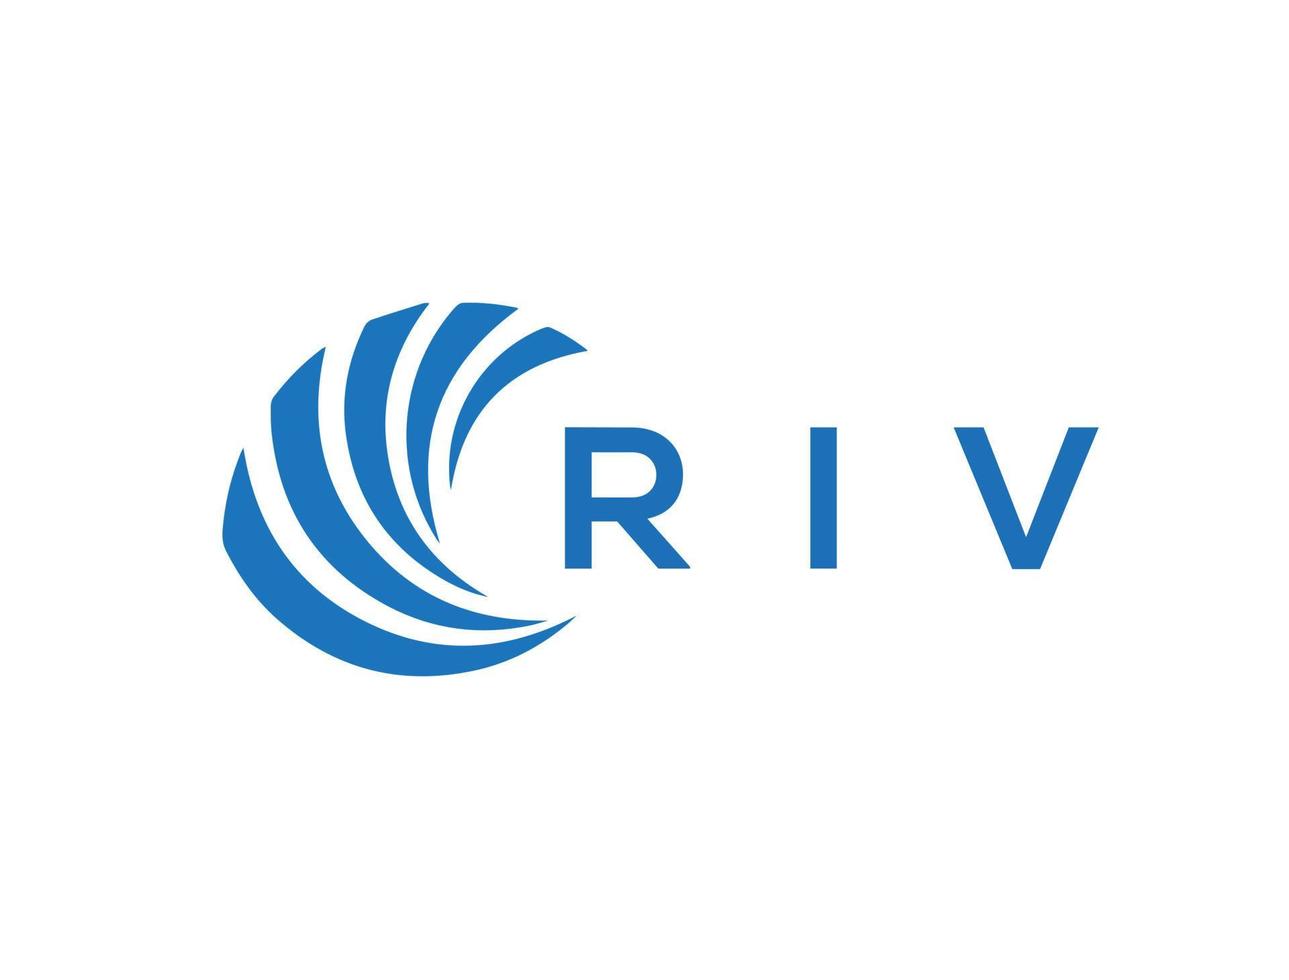 RIV letter logo design on white background. RIV creative circle letter logo concept. RIV letter design. vector